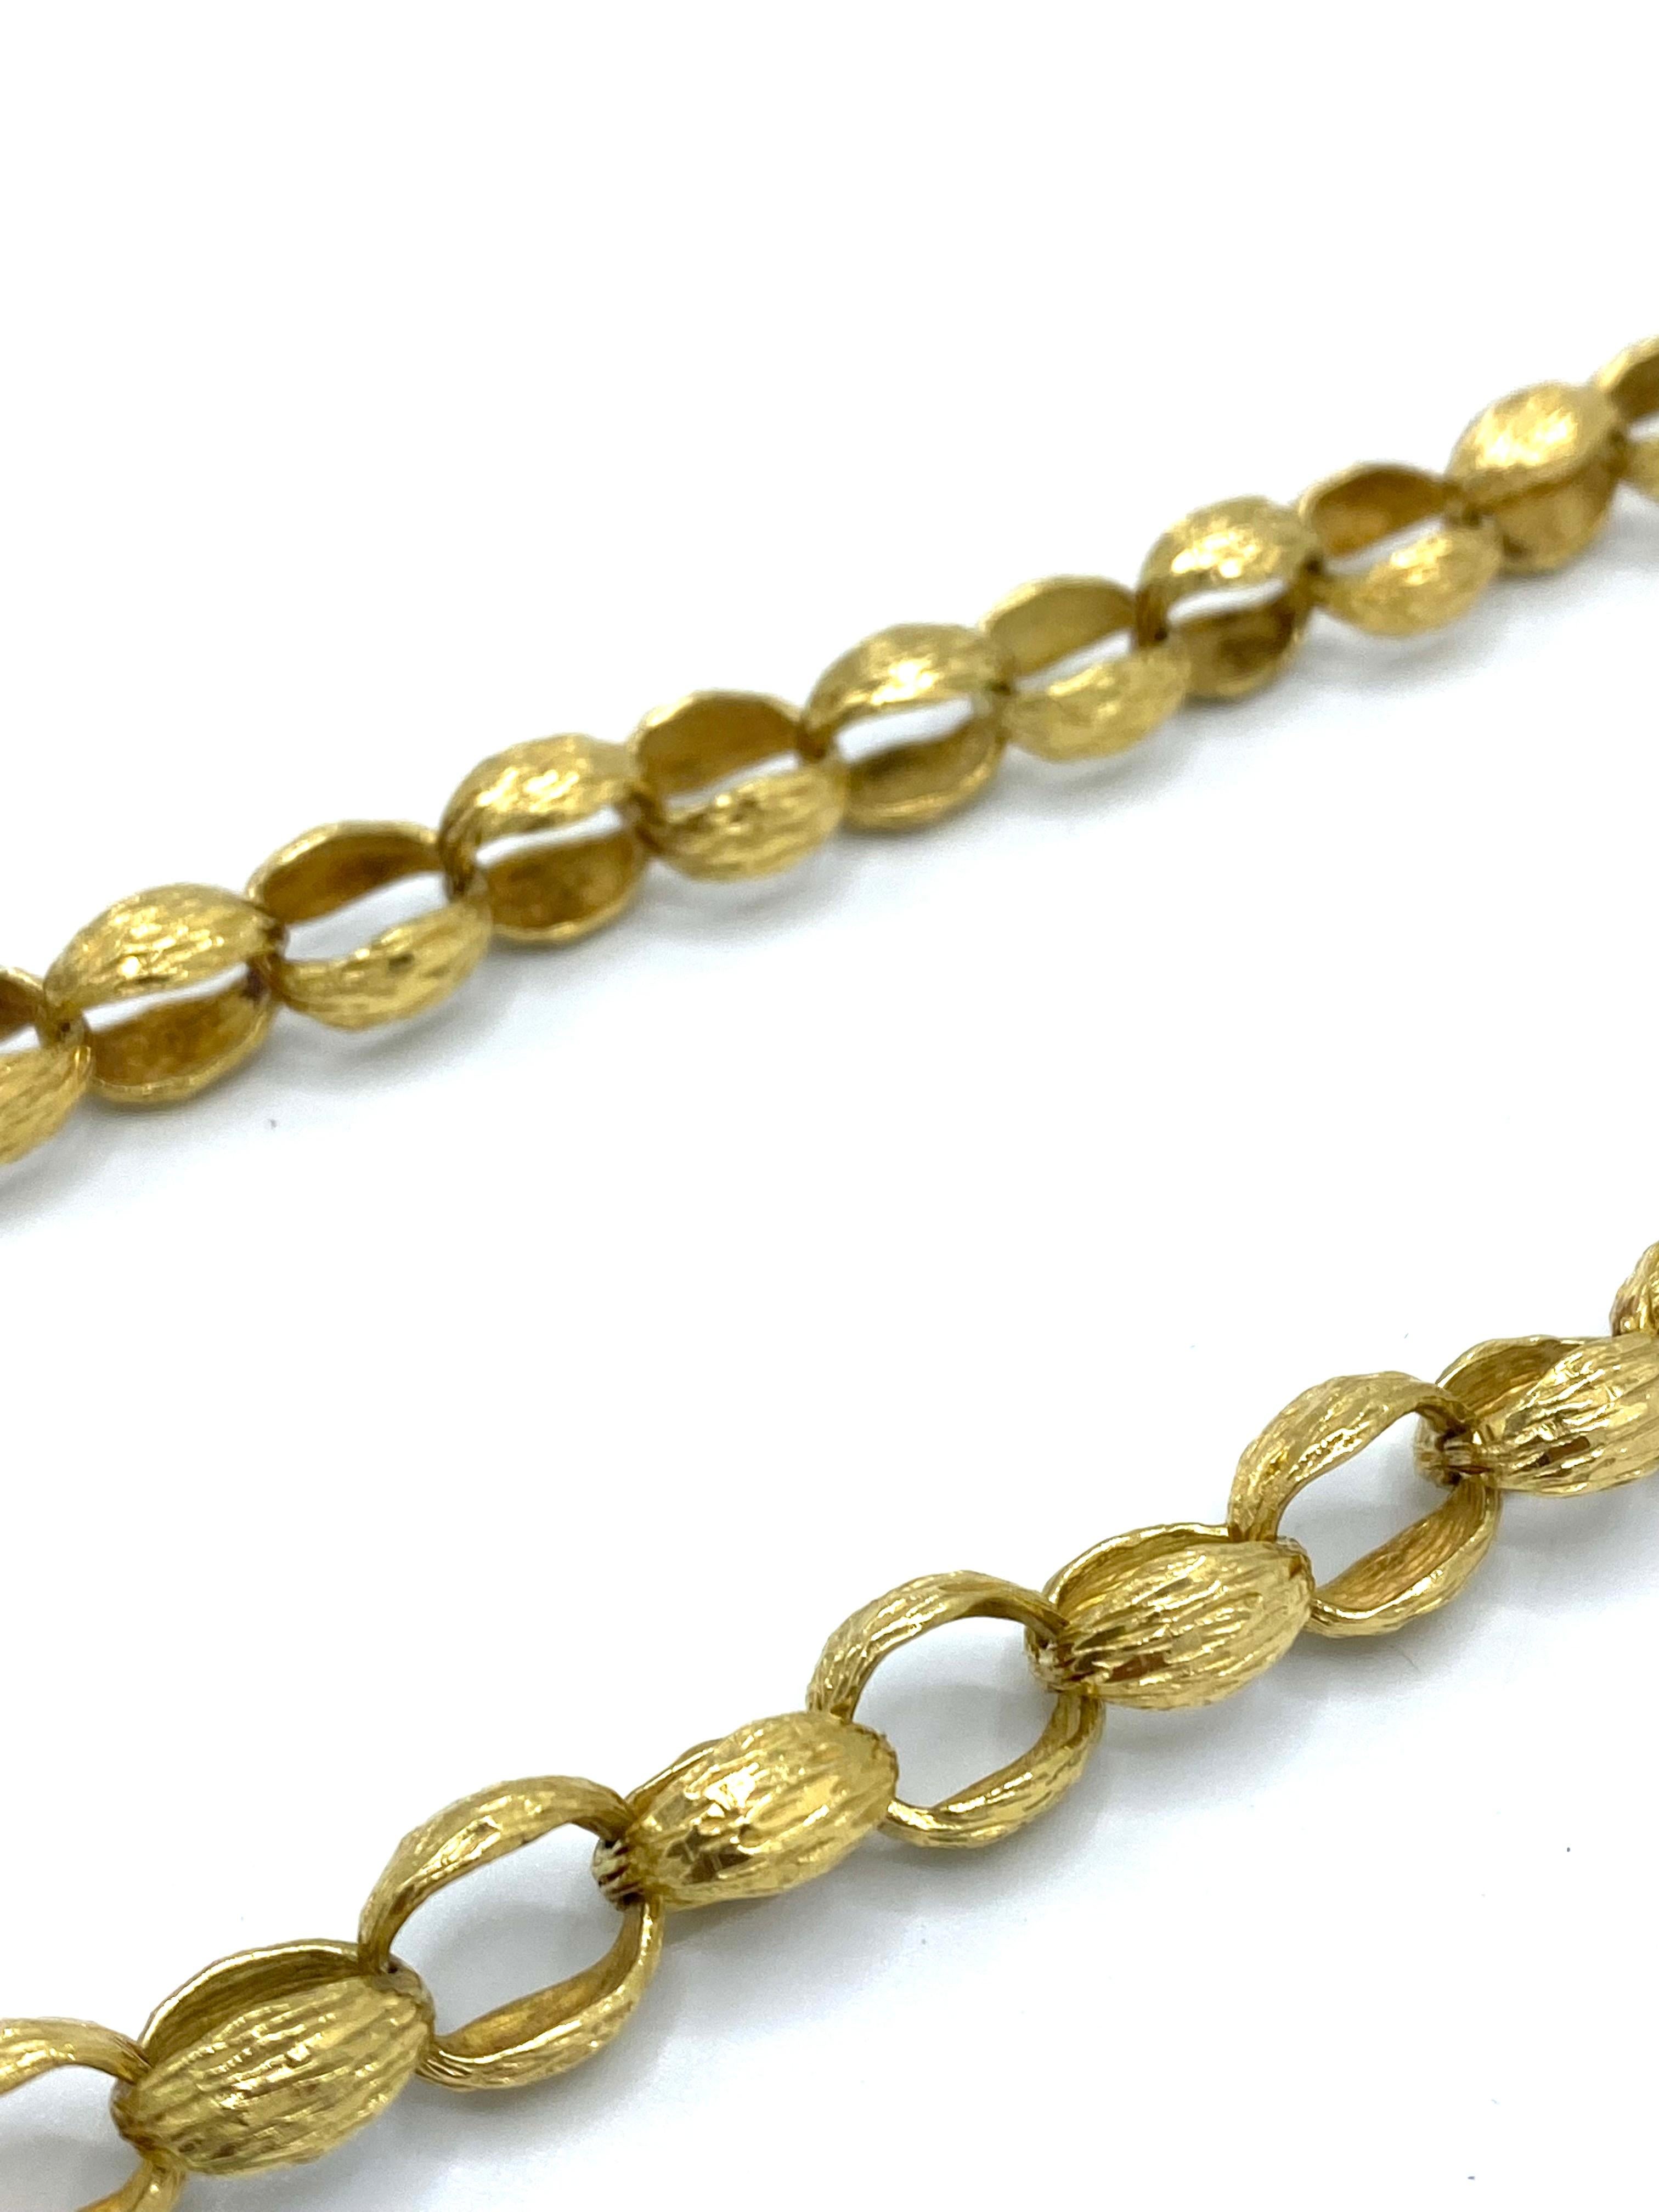 Détails du produit :

Le collier et la broche sont en or jaune 18 carats, avec une finition texturée et un motif floral.

Le collier mesure 34 pouces de long et 5/16 pouces de large. Le poids est de 113.2 grammes.
Le pendentif mesure 2 11/16 pouces